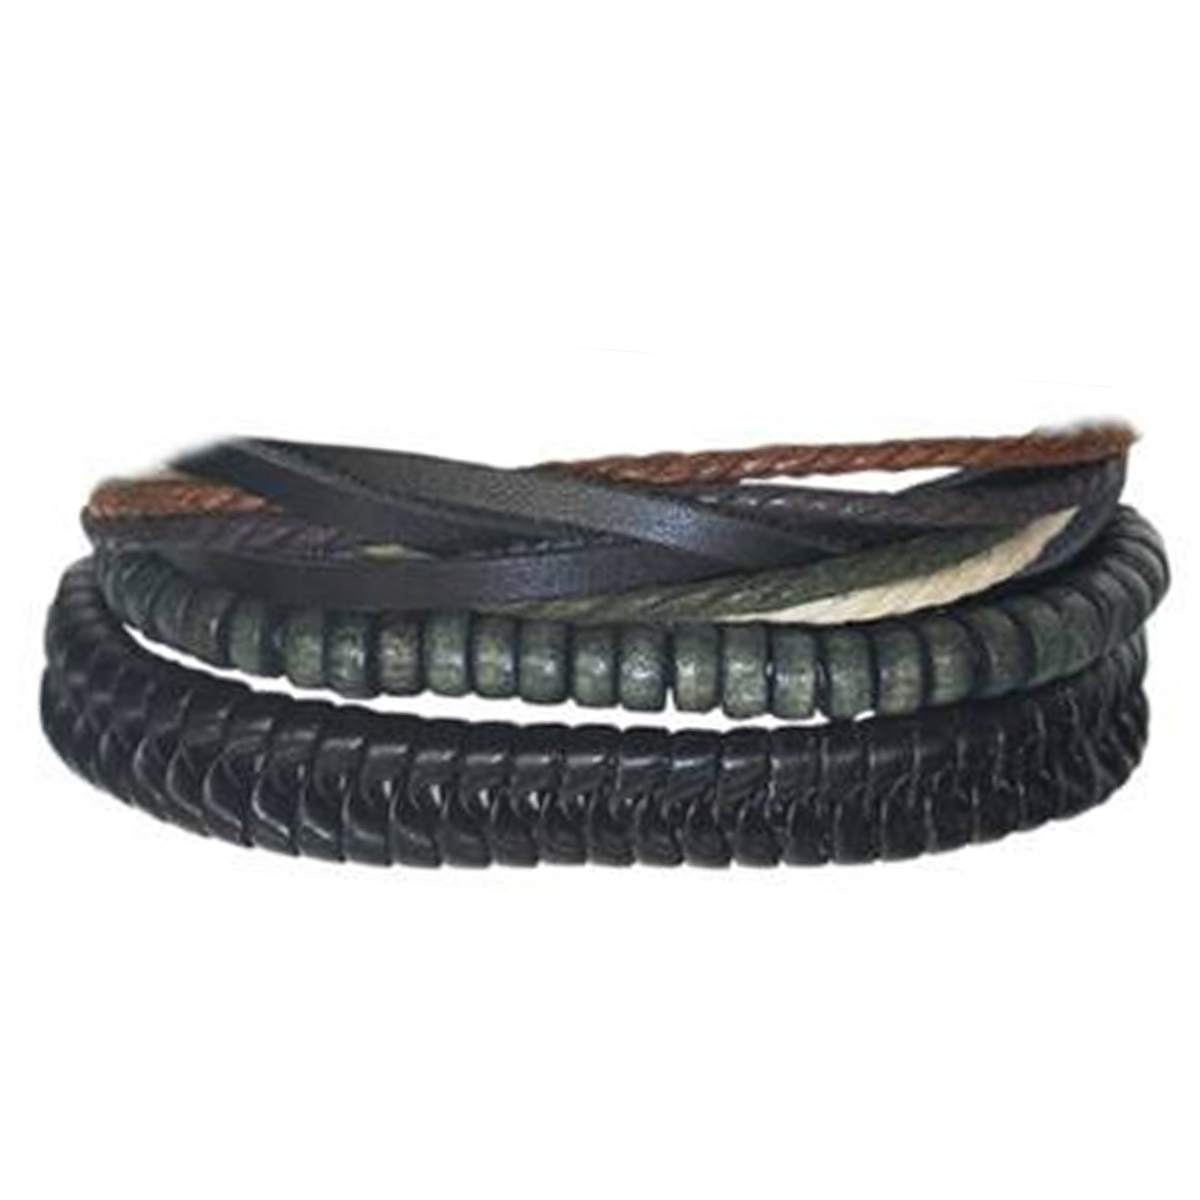 Bracelet ethnique cuir \'Kilimanjaro\' noir vert - largeur 3 à 4 cm - [R3457]